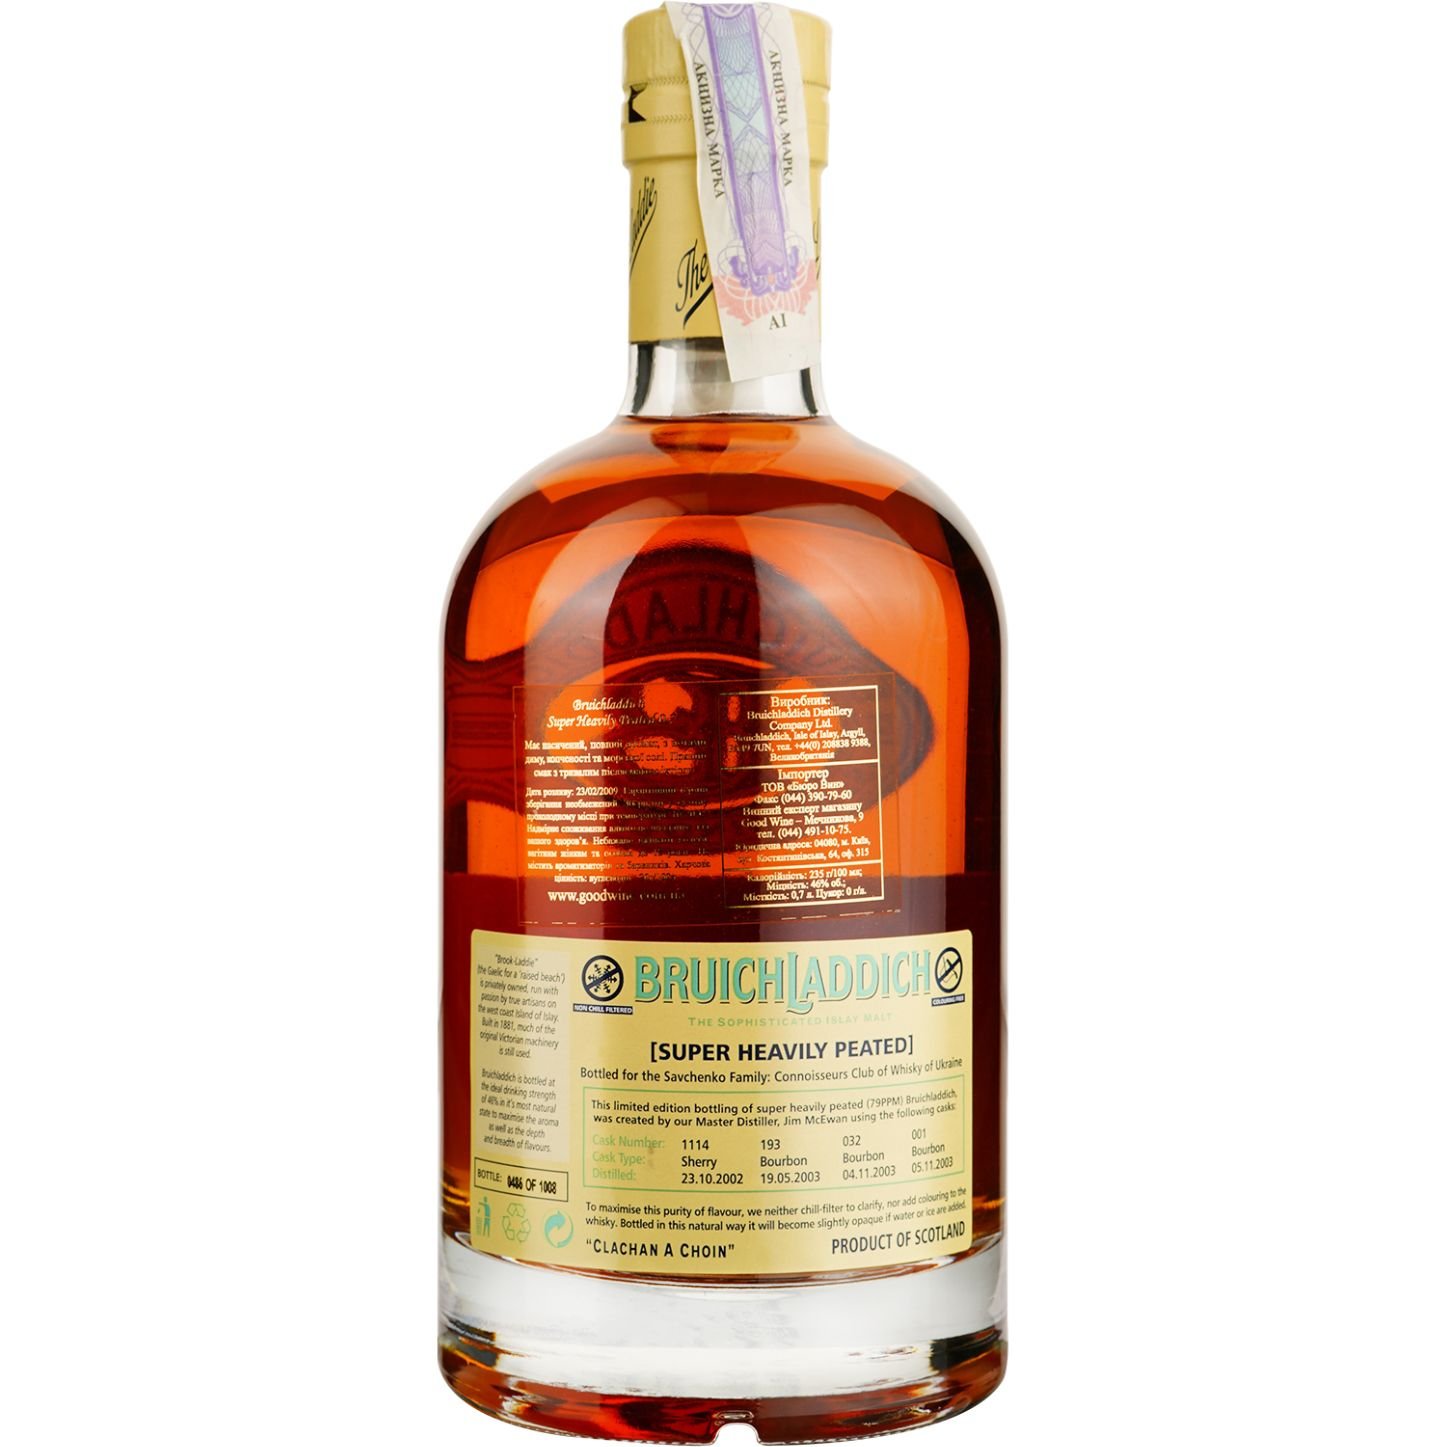 Віскі Bruichladdich Super Heavily Peated Single Malt Scotch Whisky, у подарунковій упаковці, 46%, 0,7 л - фото 4